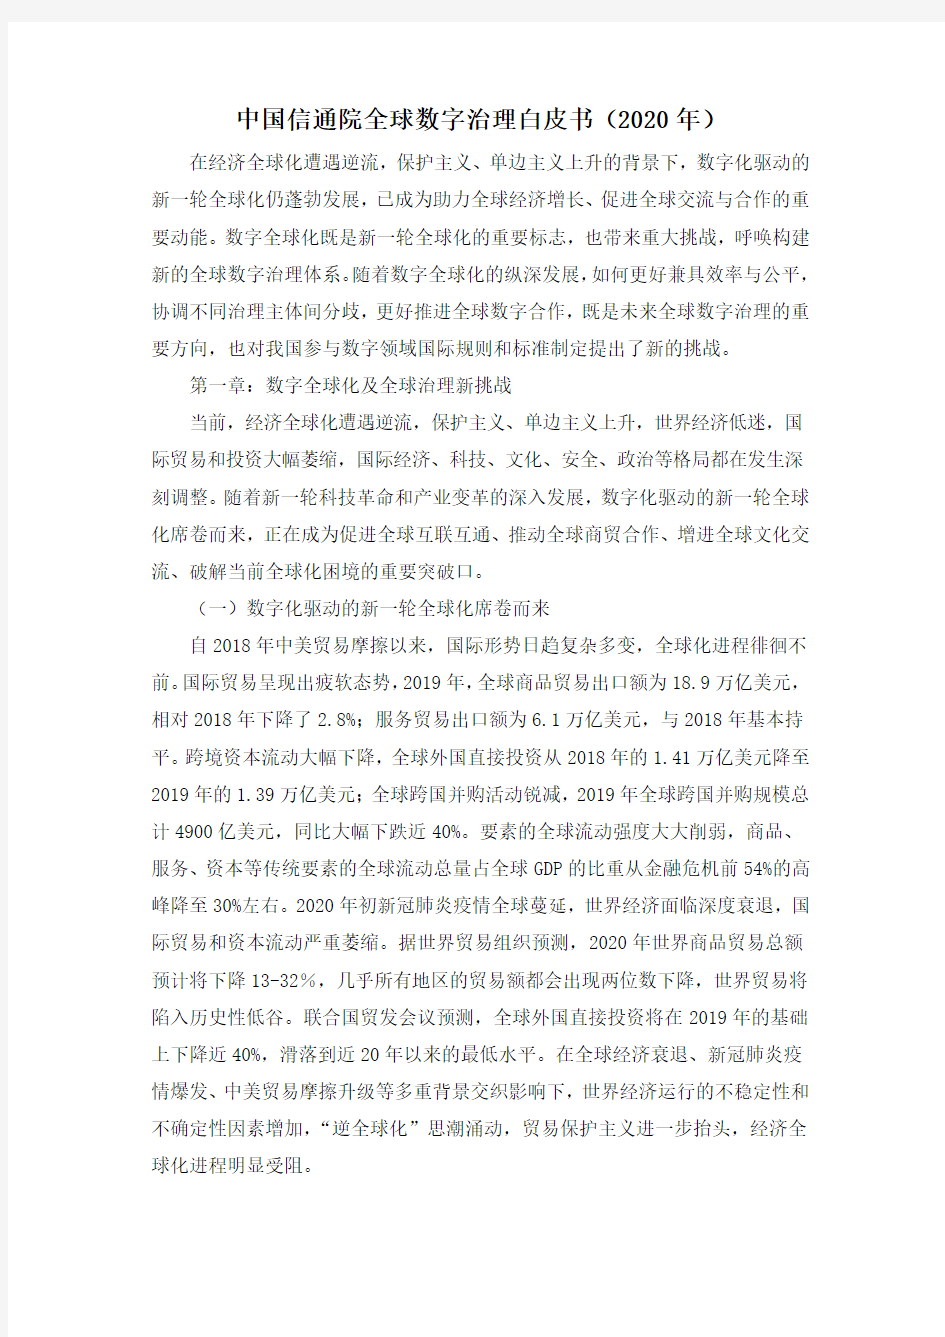 中国信通院全球数字治理白皮书(2020年)